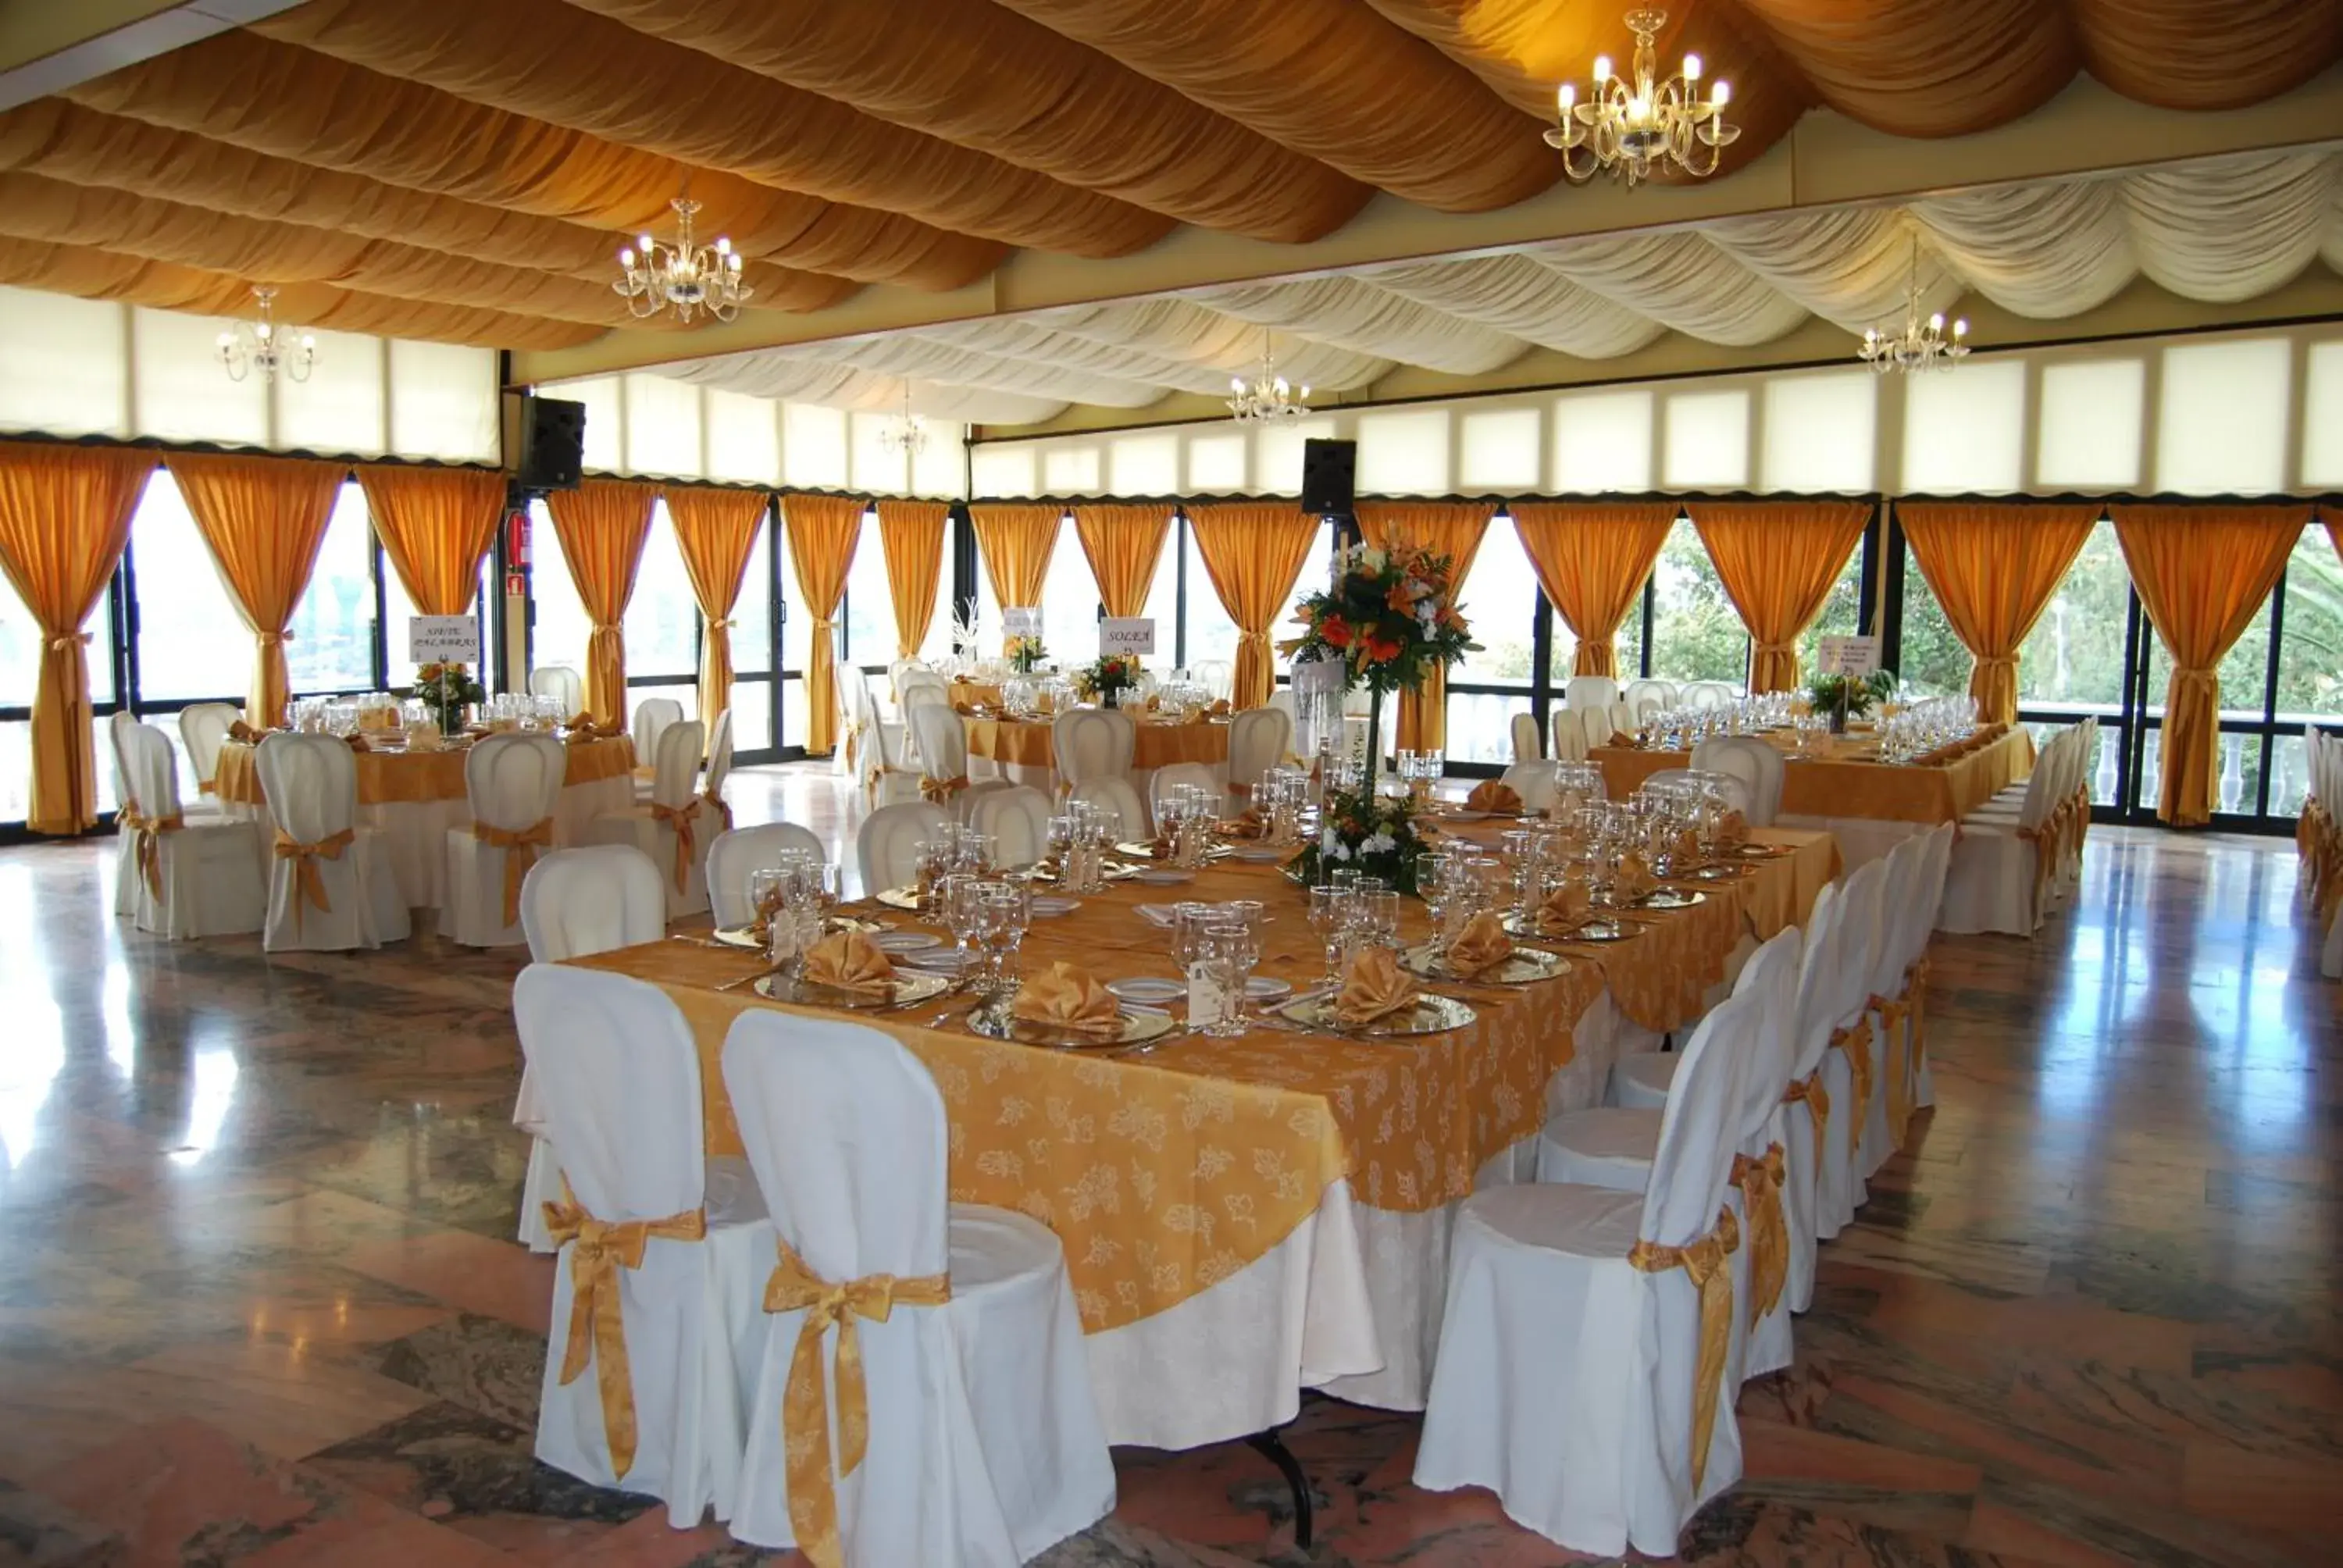 Banquet/Function facilities, Banquet Facilities in Hotel Los Templarios